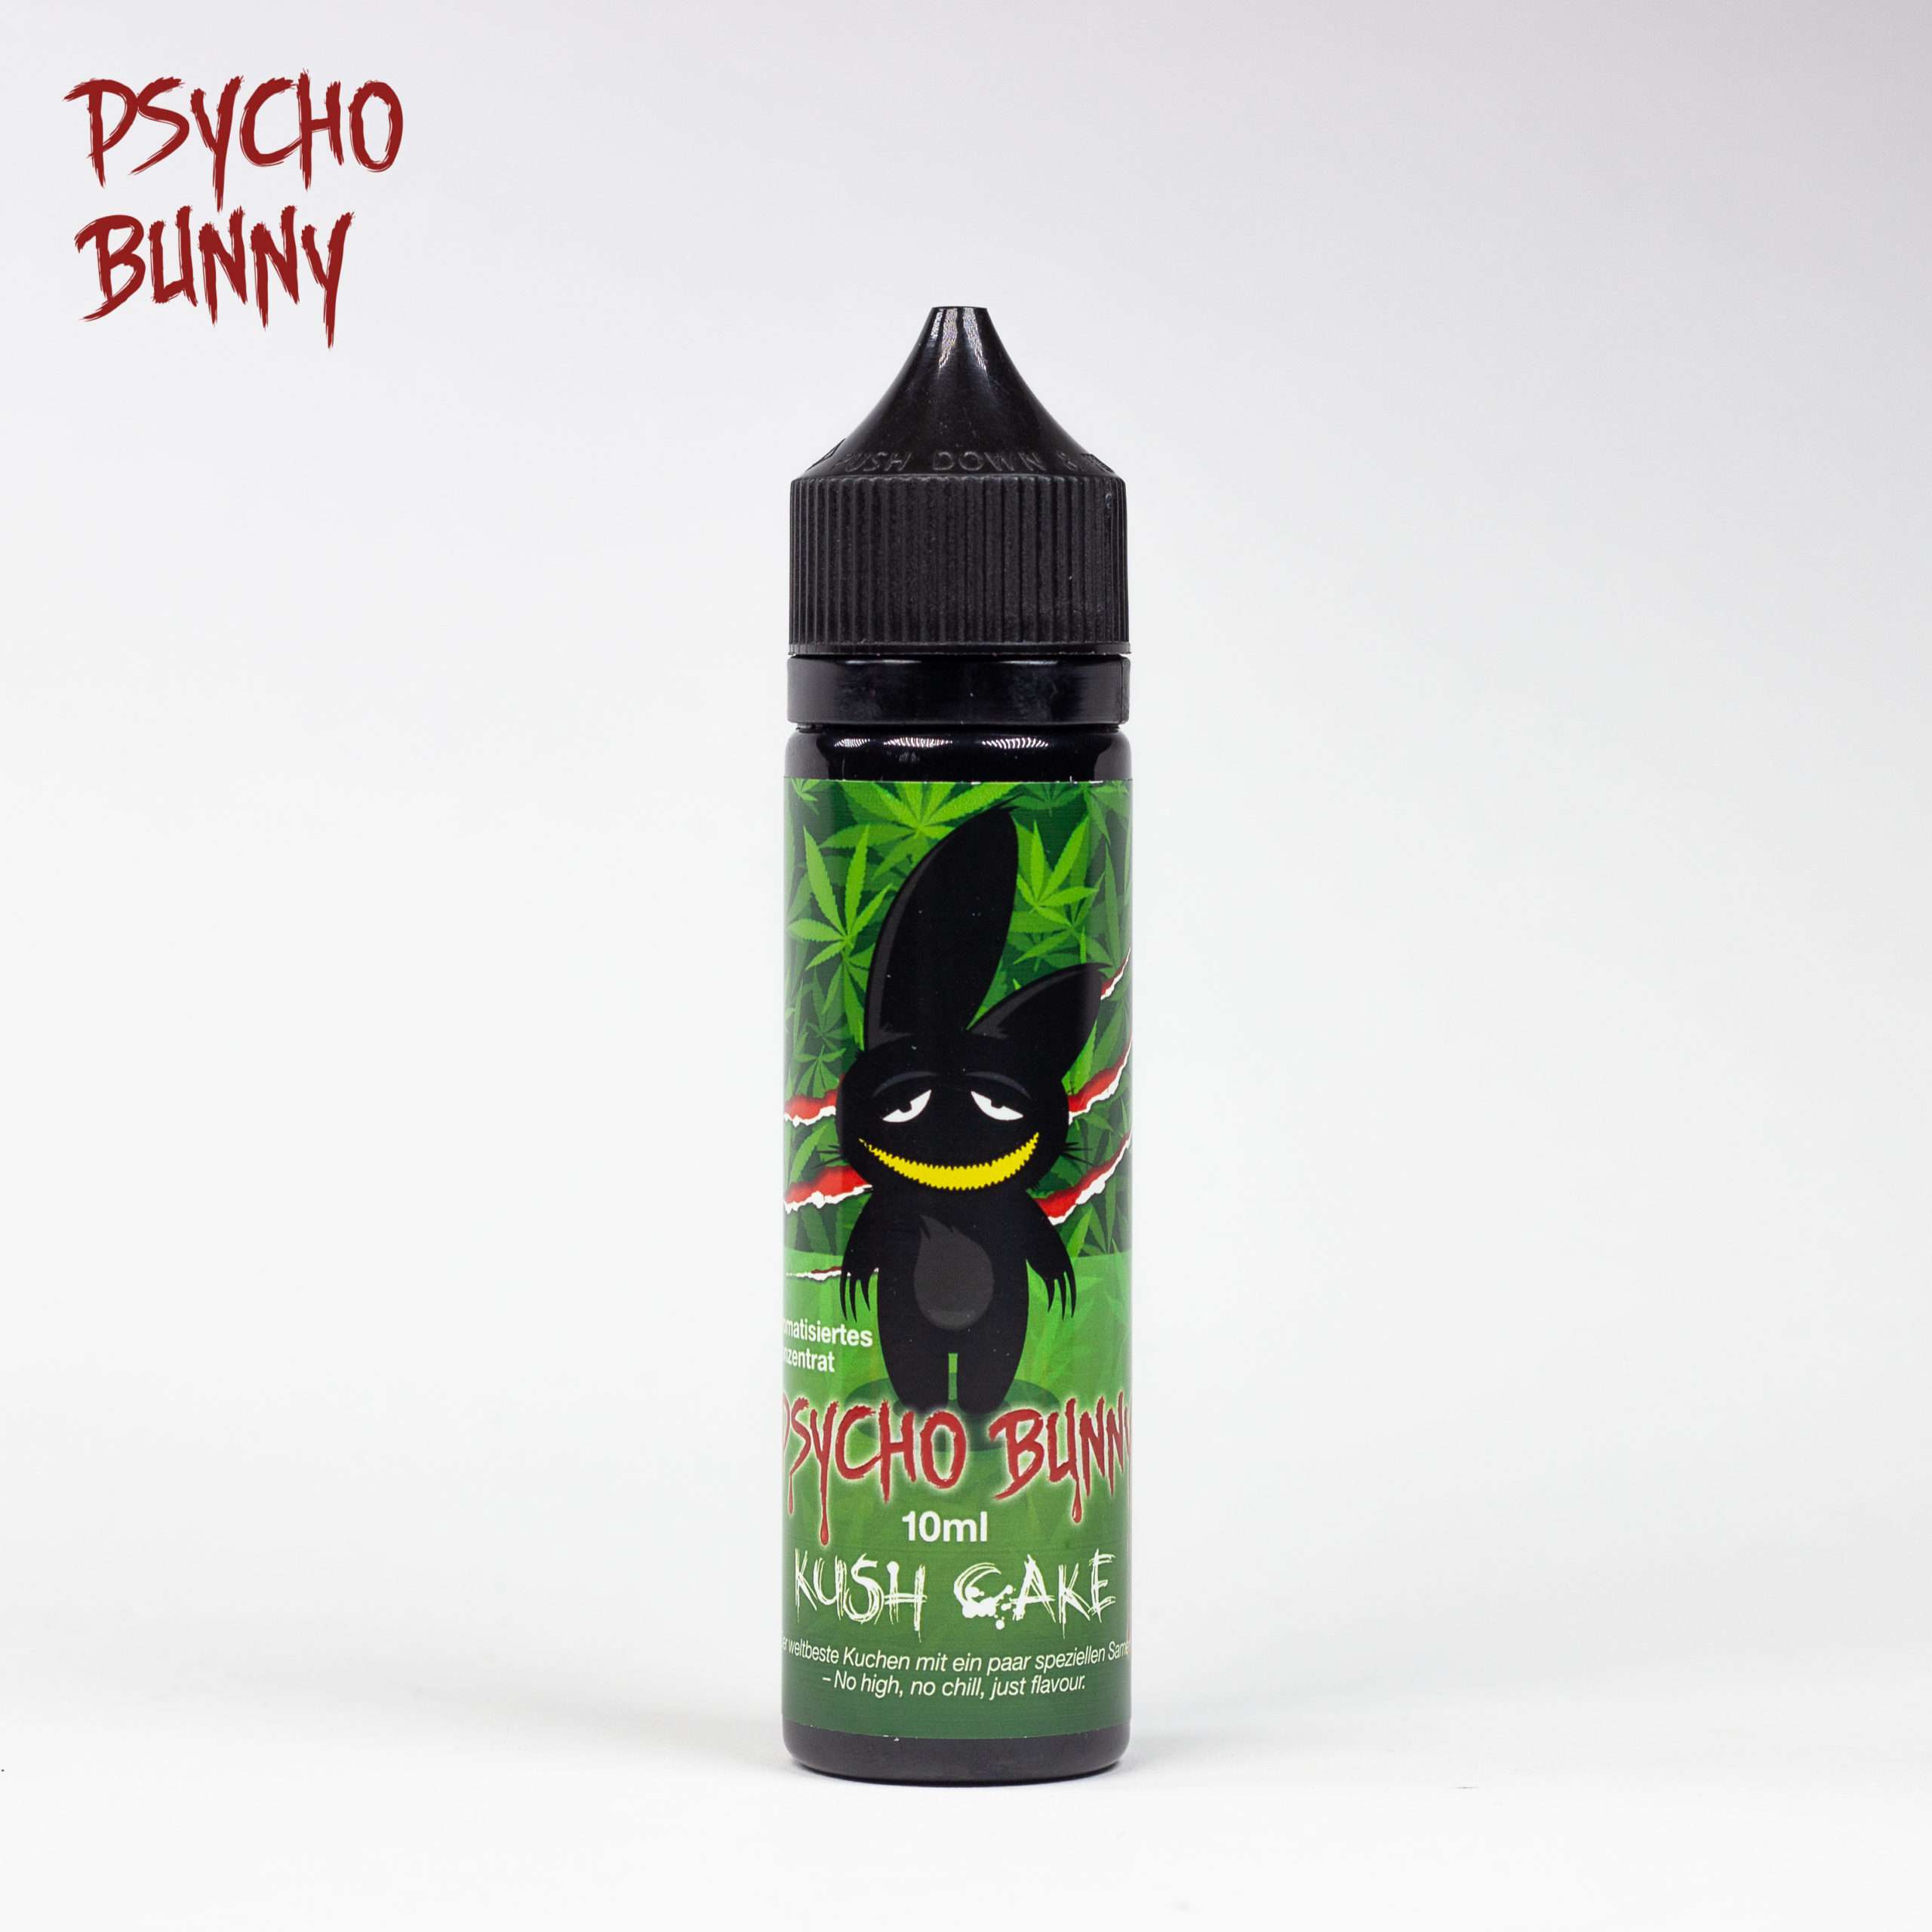 Psycho Bunny - Kush Cake - 50ml